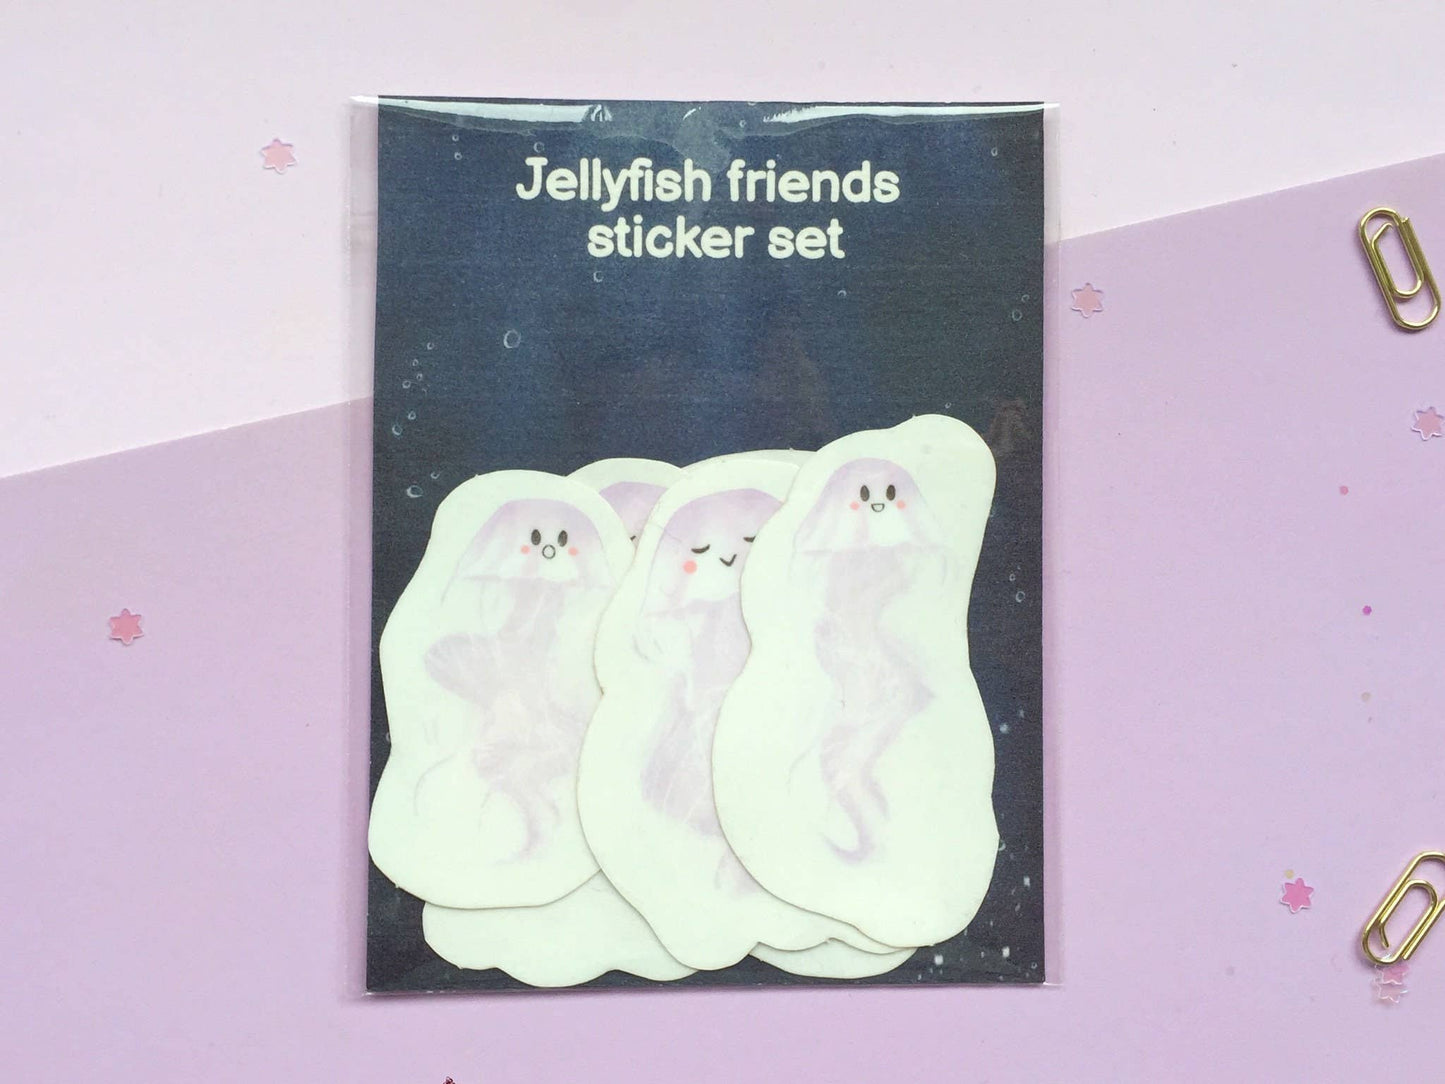 Cute Jellyfish friends clear sticker pack - set of 6